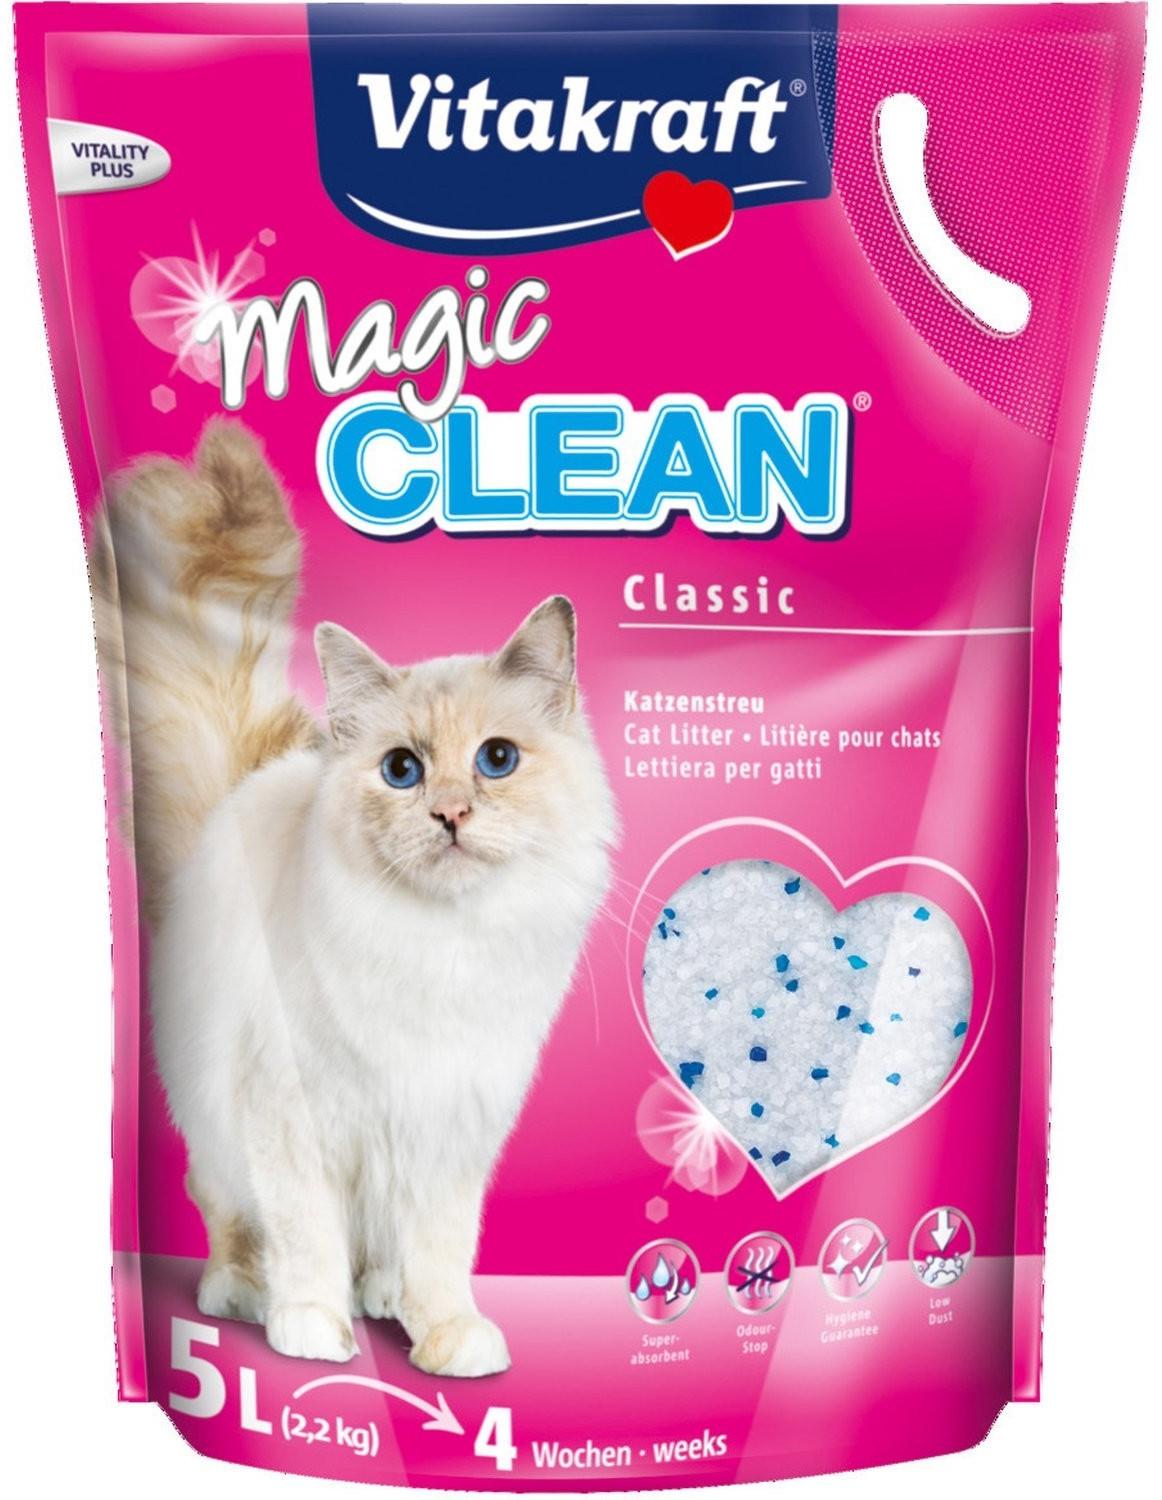 Vitakraft Magic Clean lettiera per gatti in silicio, 5 L (2.2 kg)